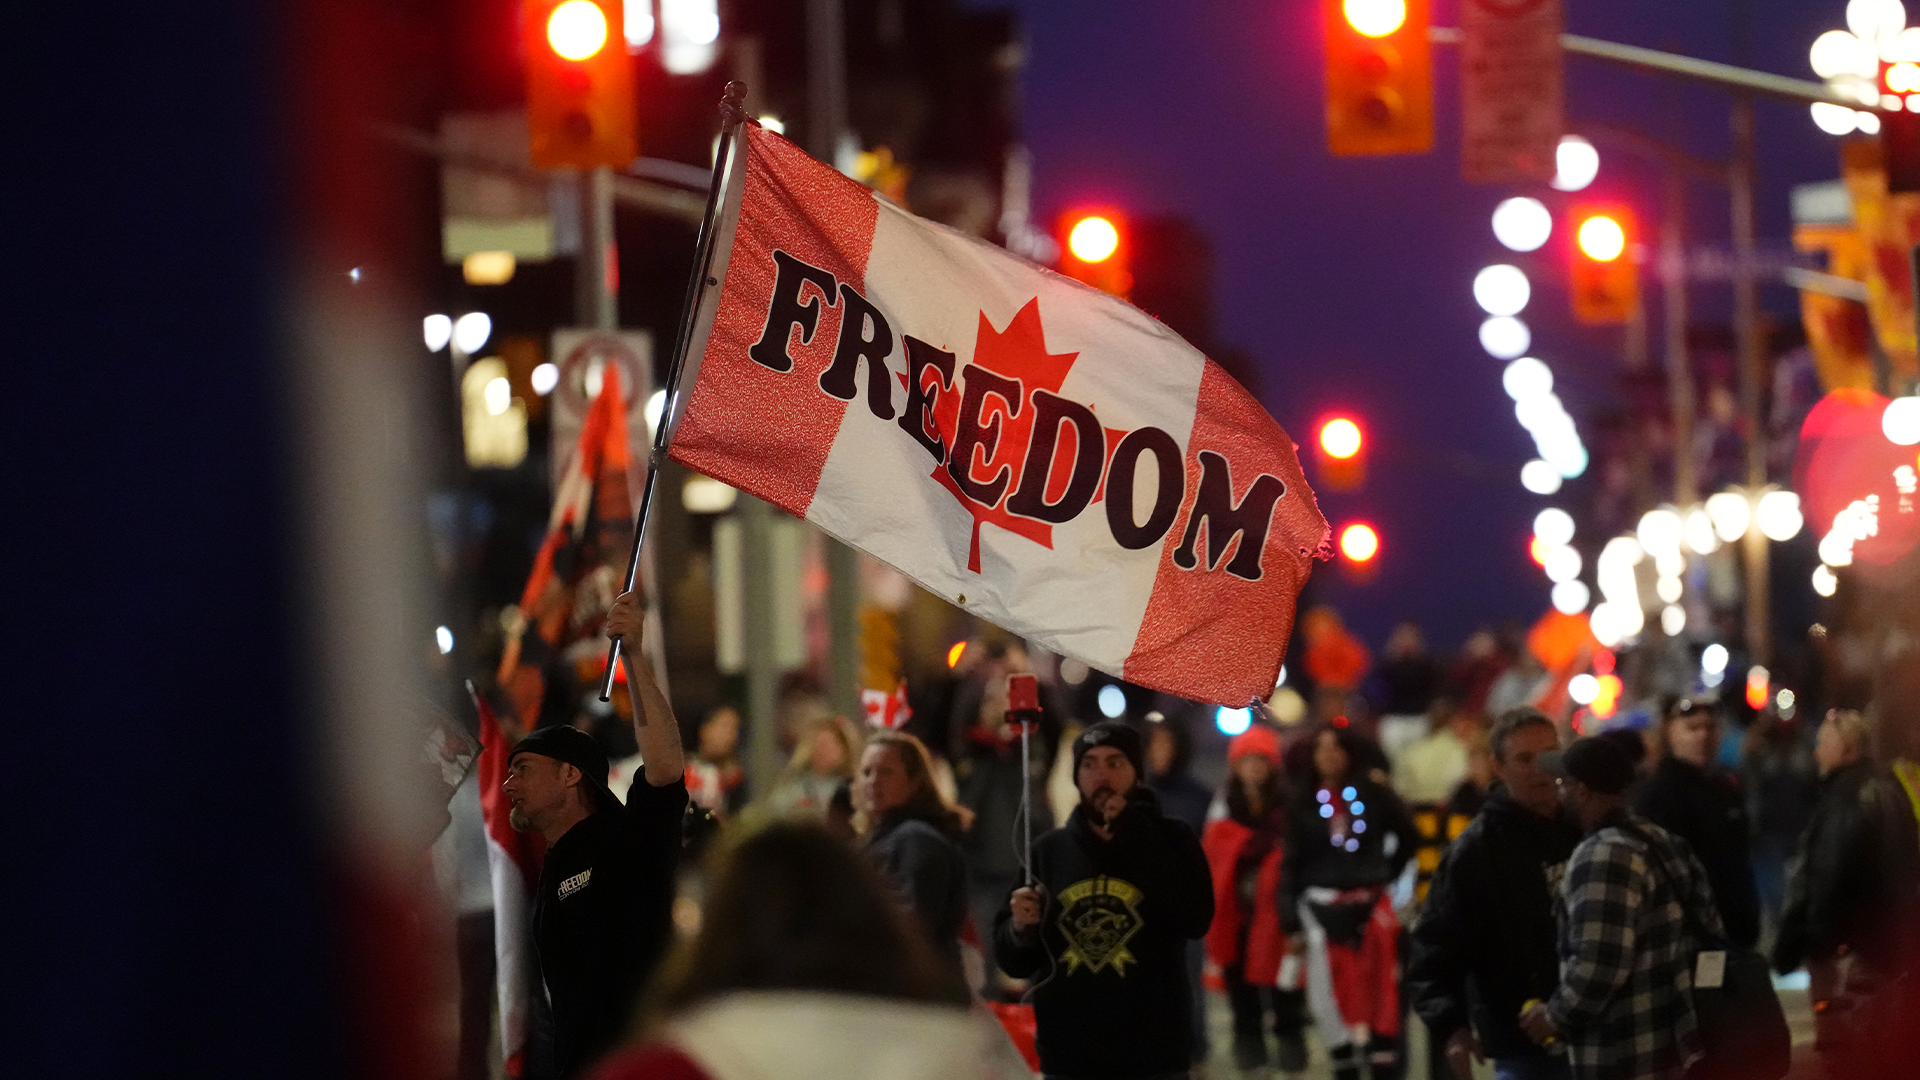 Tout indique qu'il n'y aura finalement pas de «convoi de la liberté» dans les rues de Winnipeg le mois prochain.